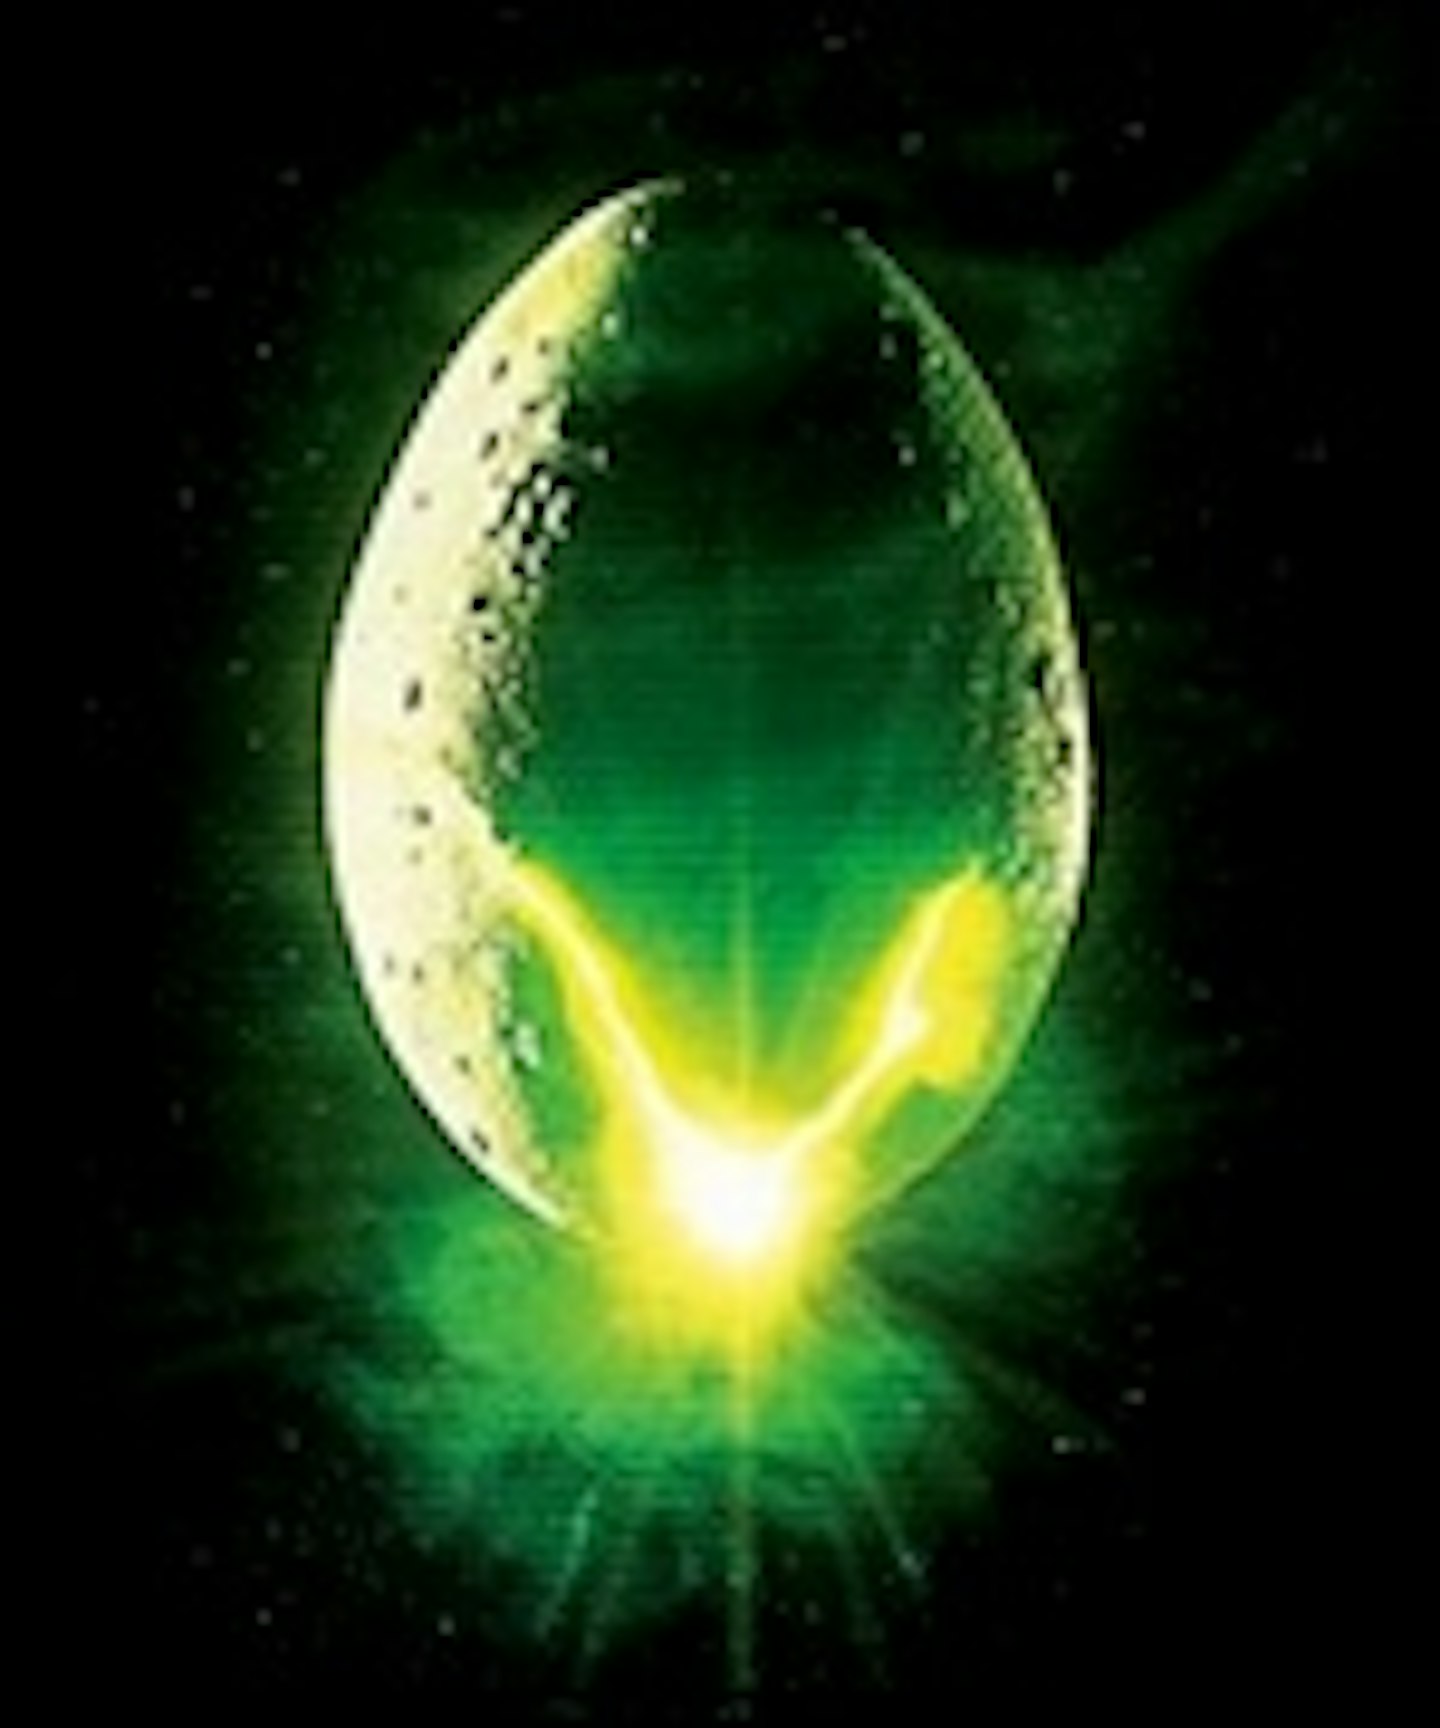 Alien Series Has A Blu-ray Release Date